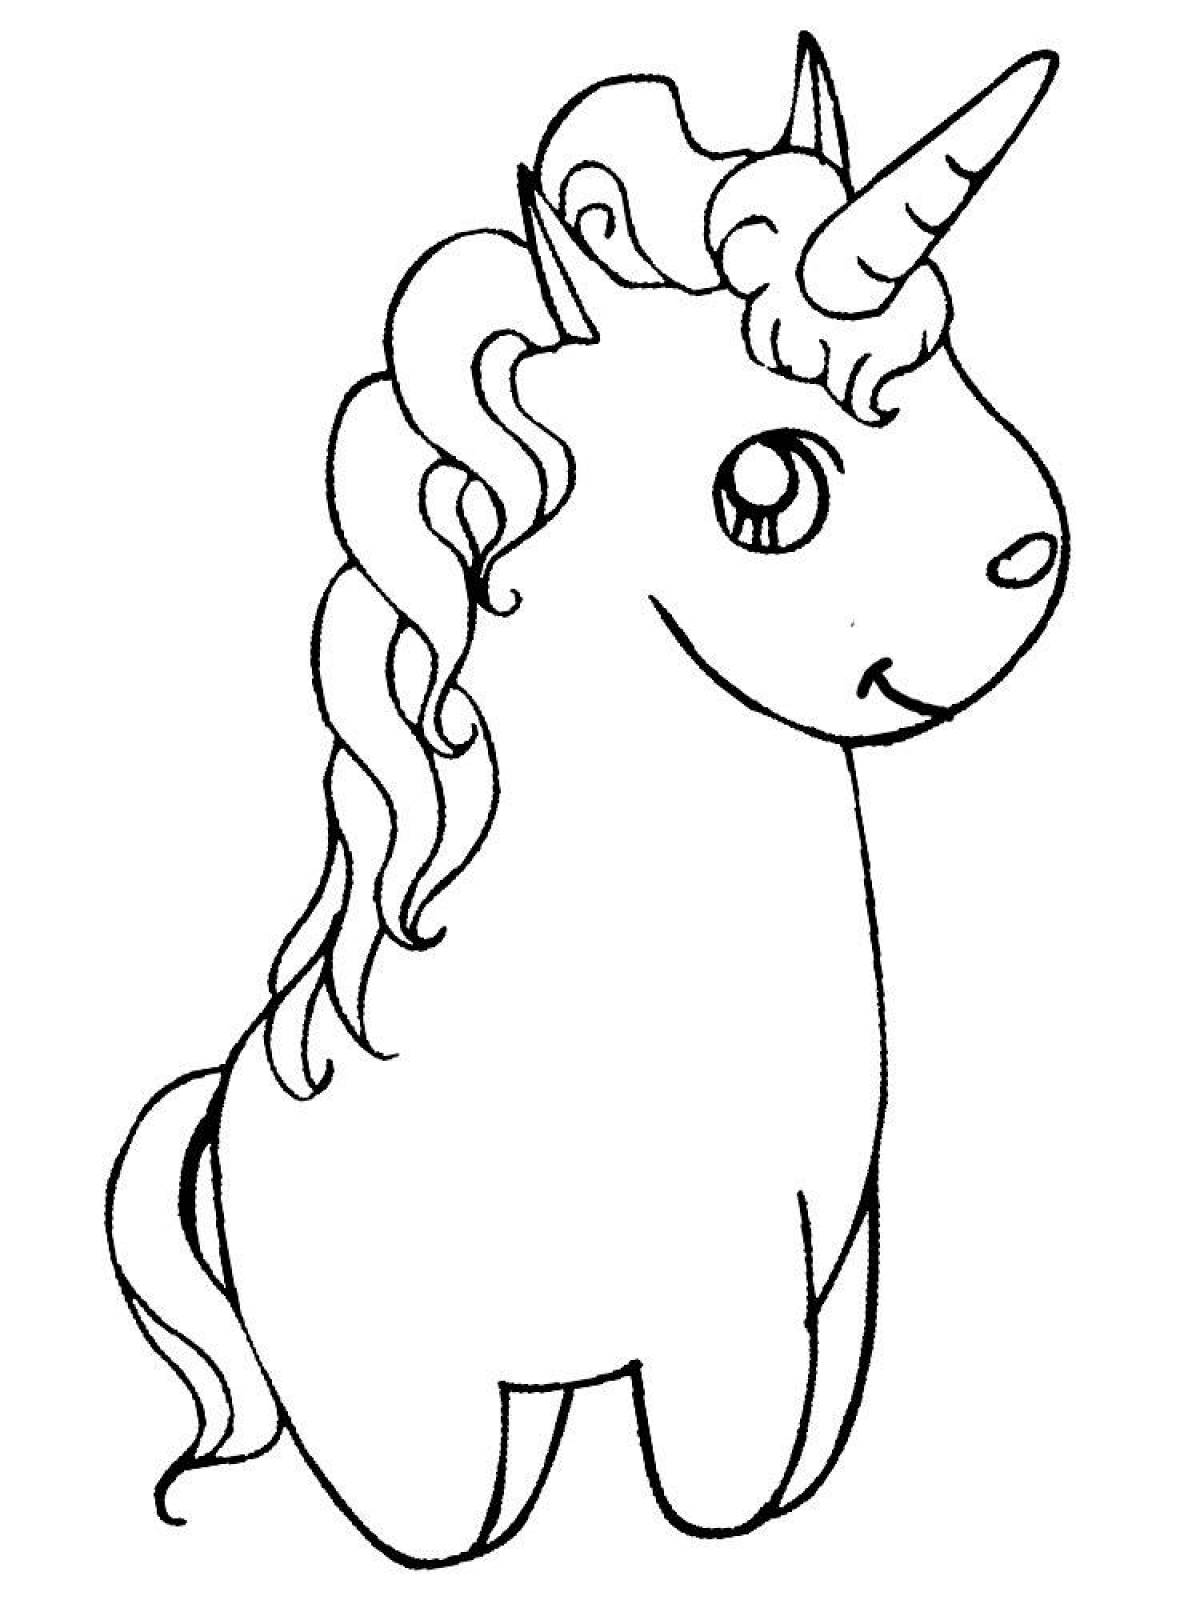 Unicorn glitter coloring book for kids